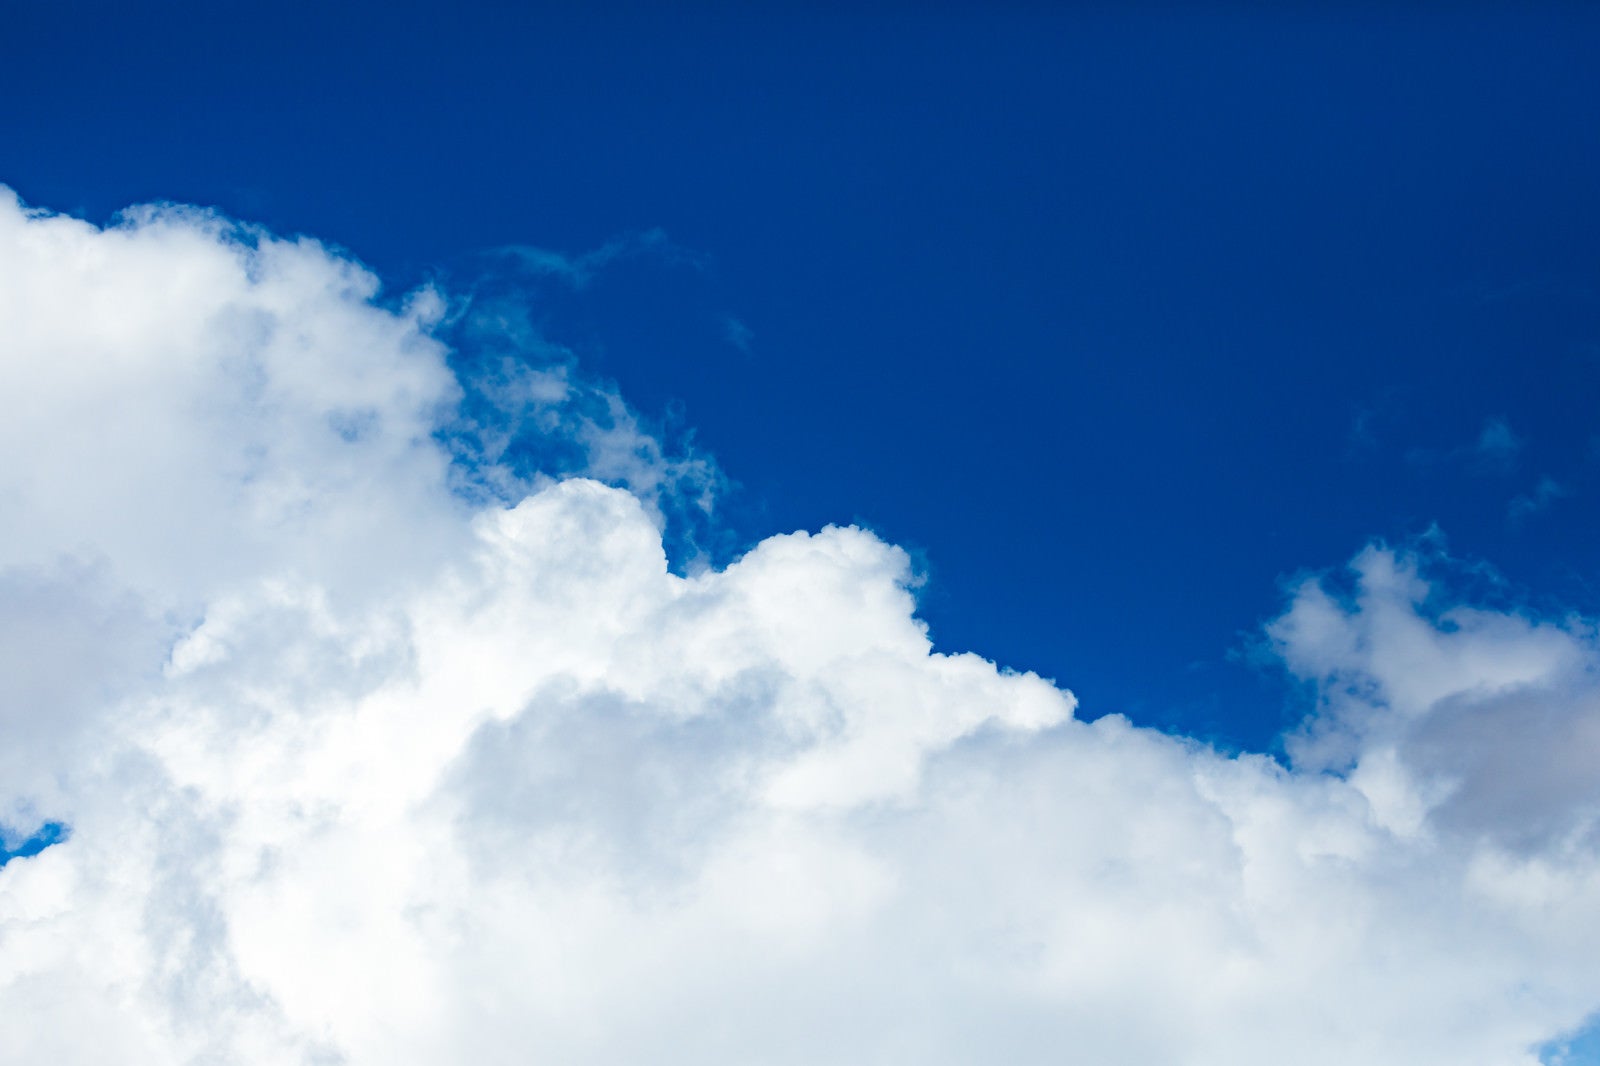 「澄んだ青色の空と雲」の写真